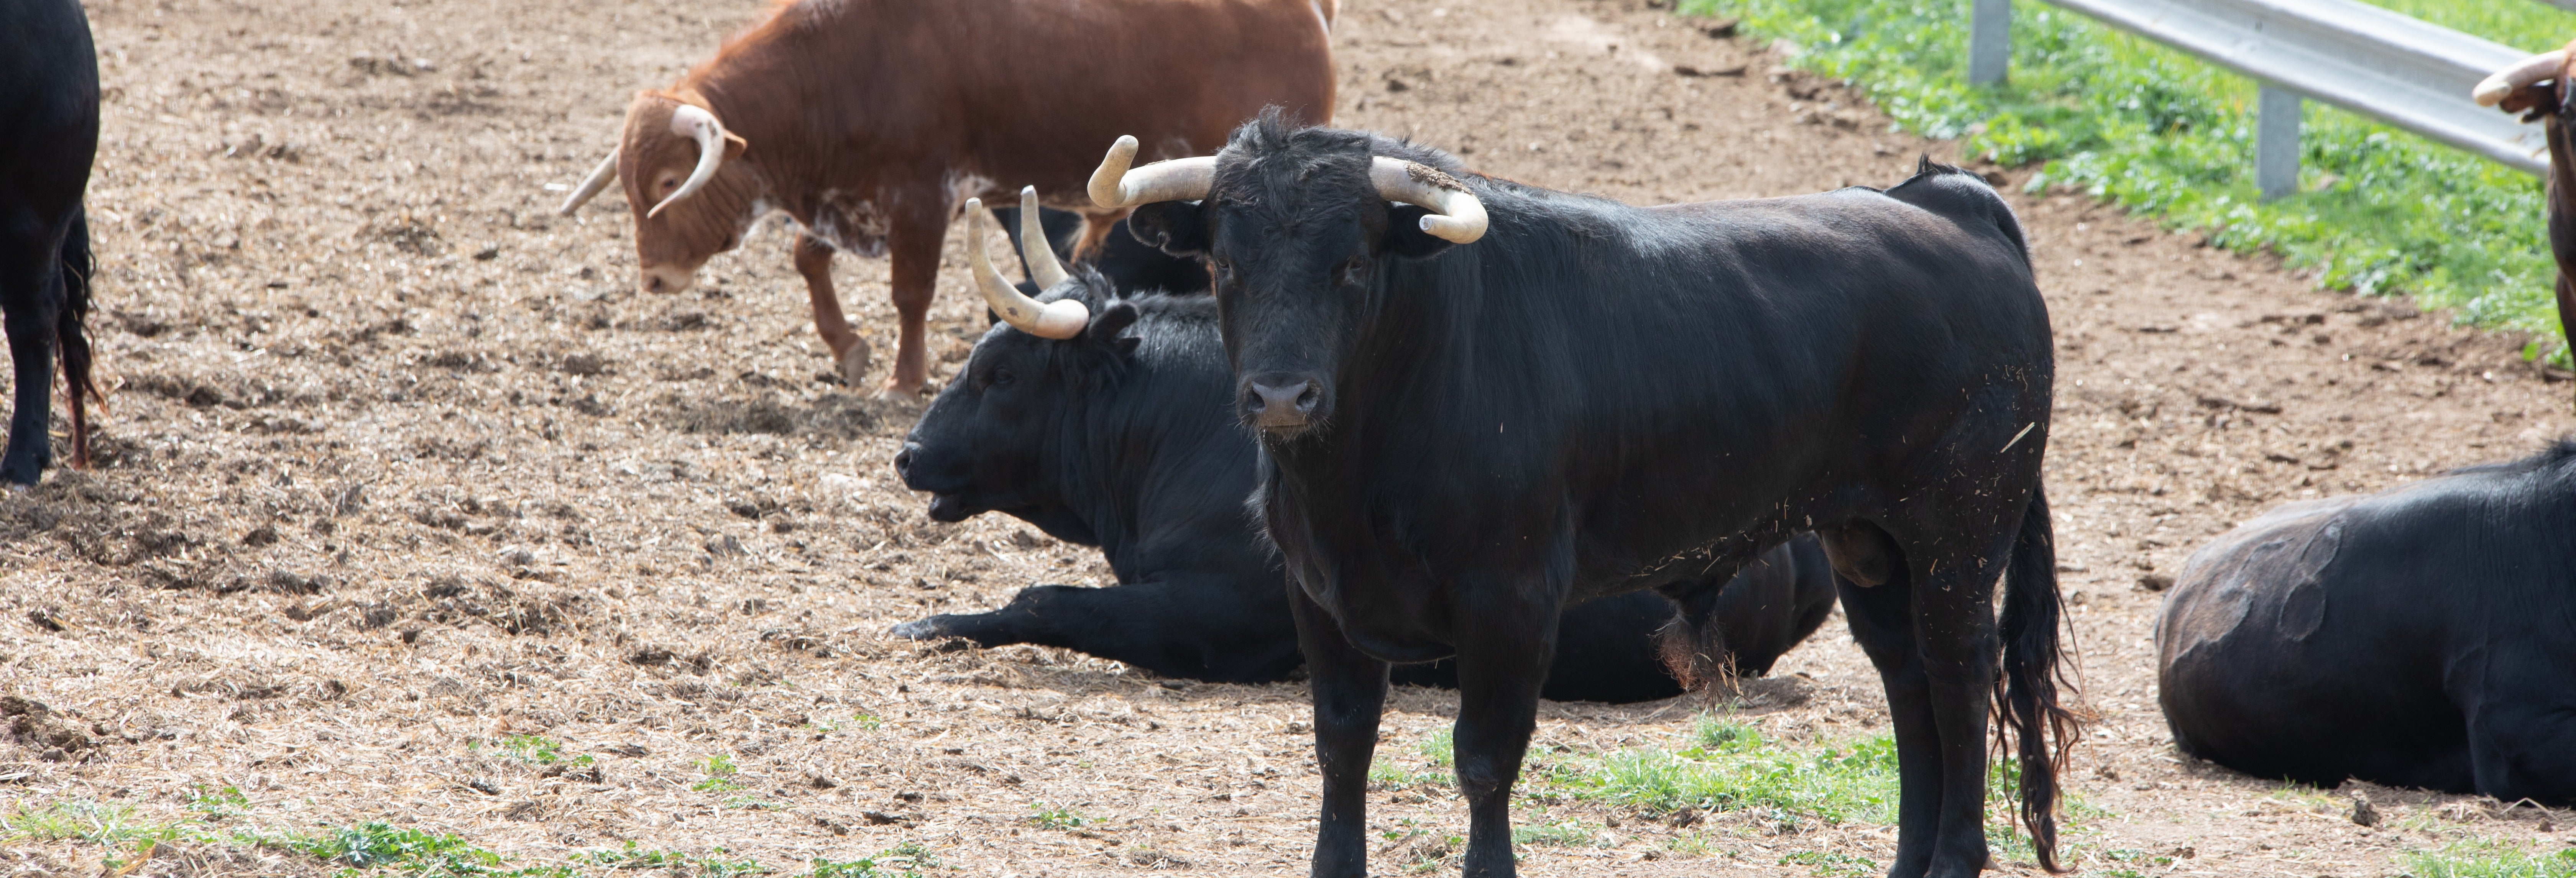 Visita a uma fazenda de touros bravos